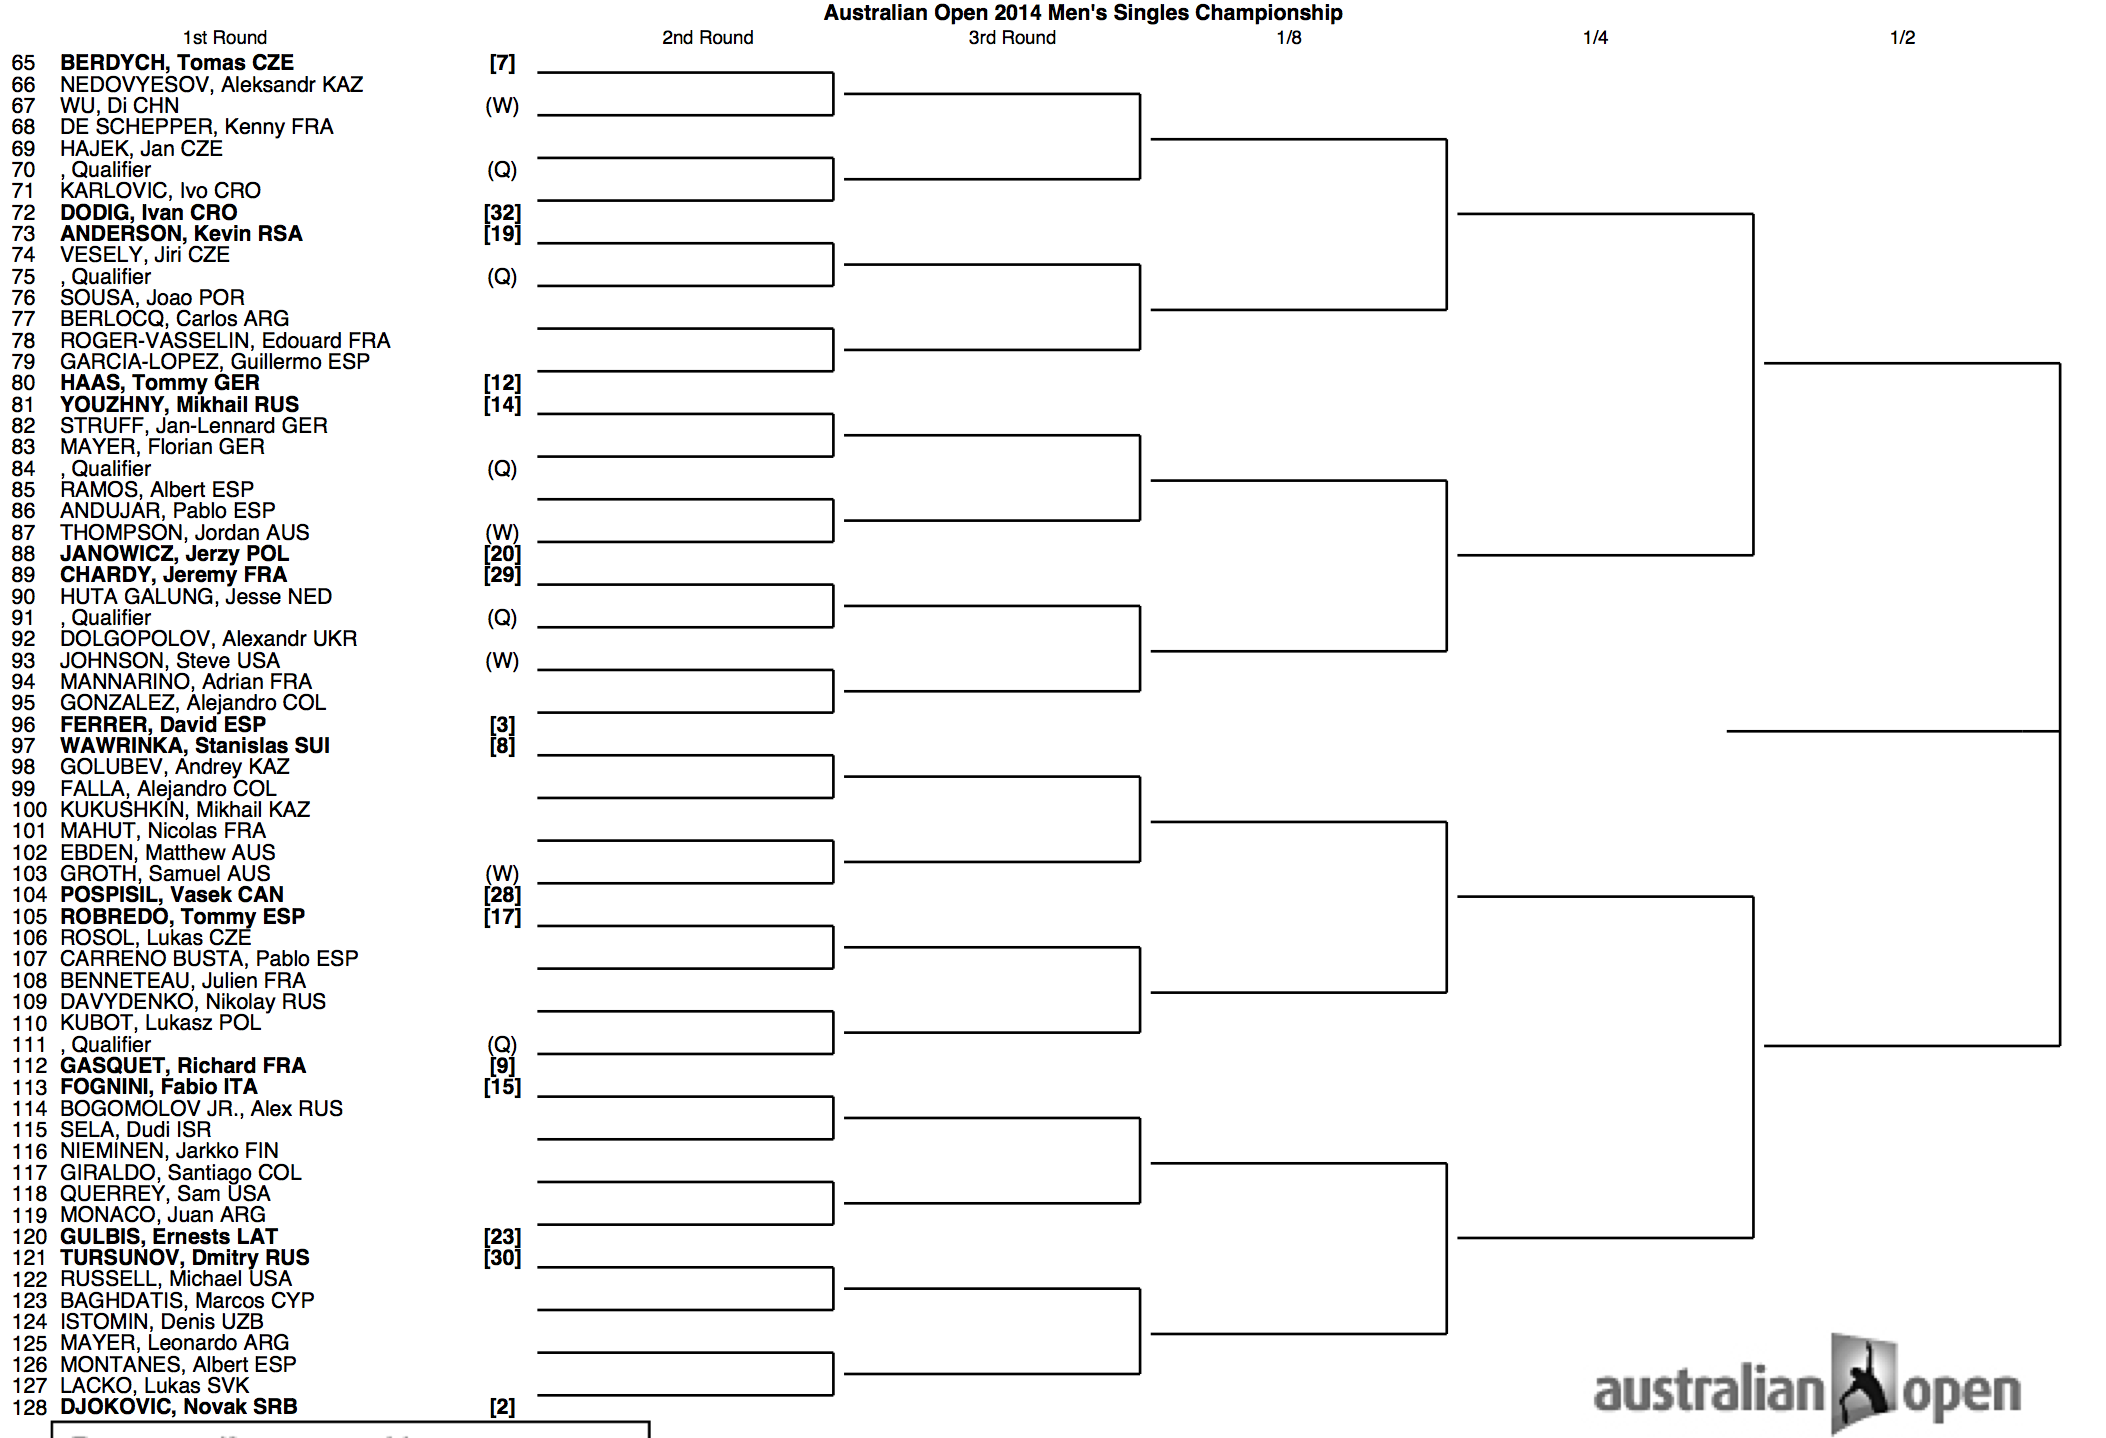 Australian Open 2014 Draw 2:2